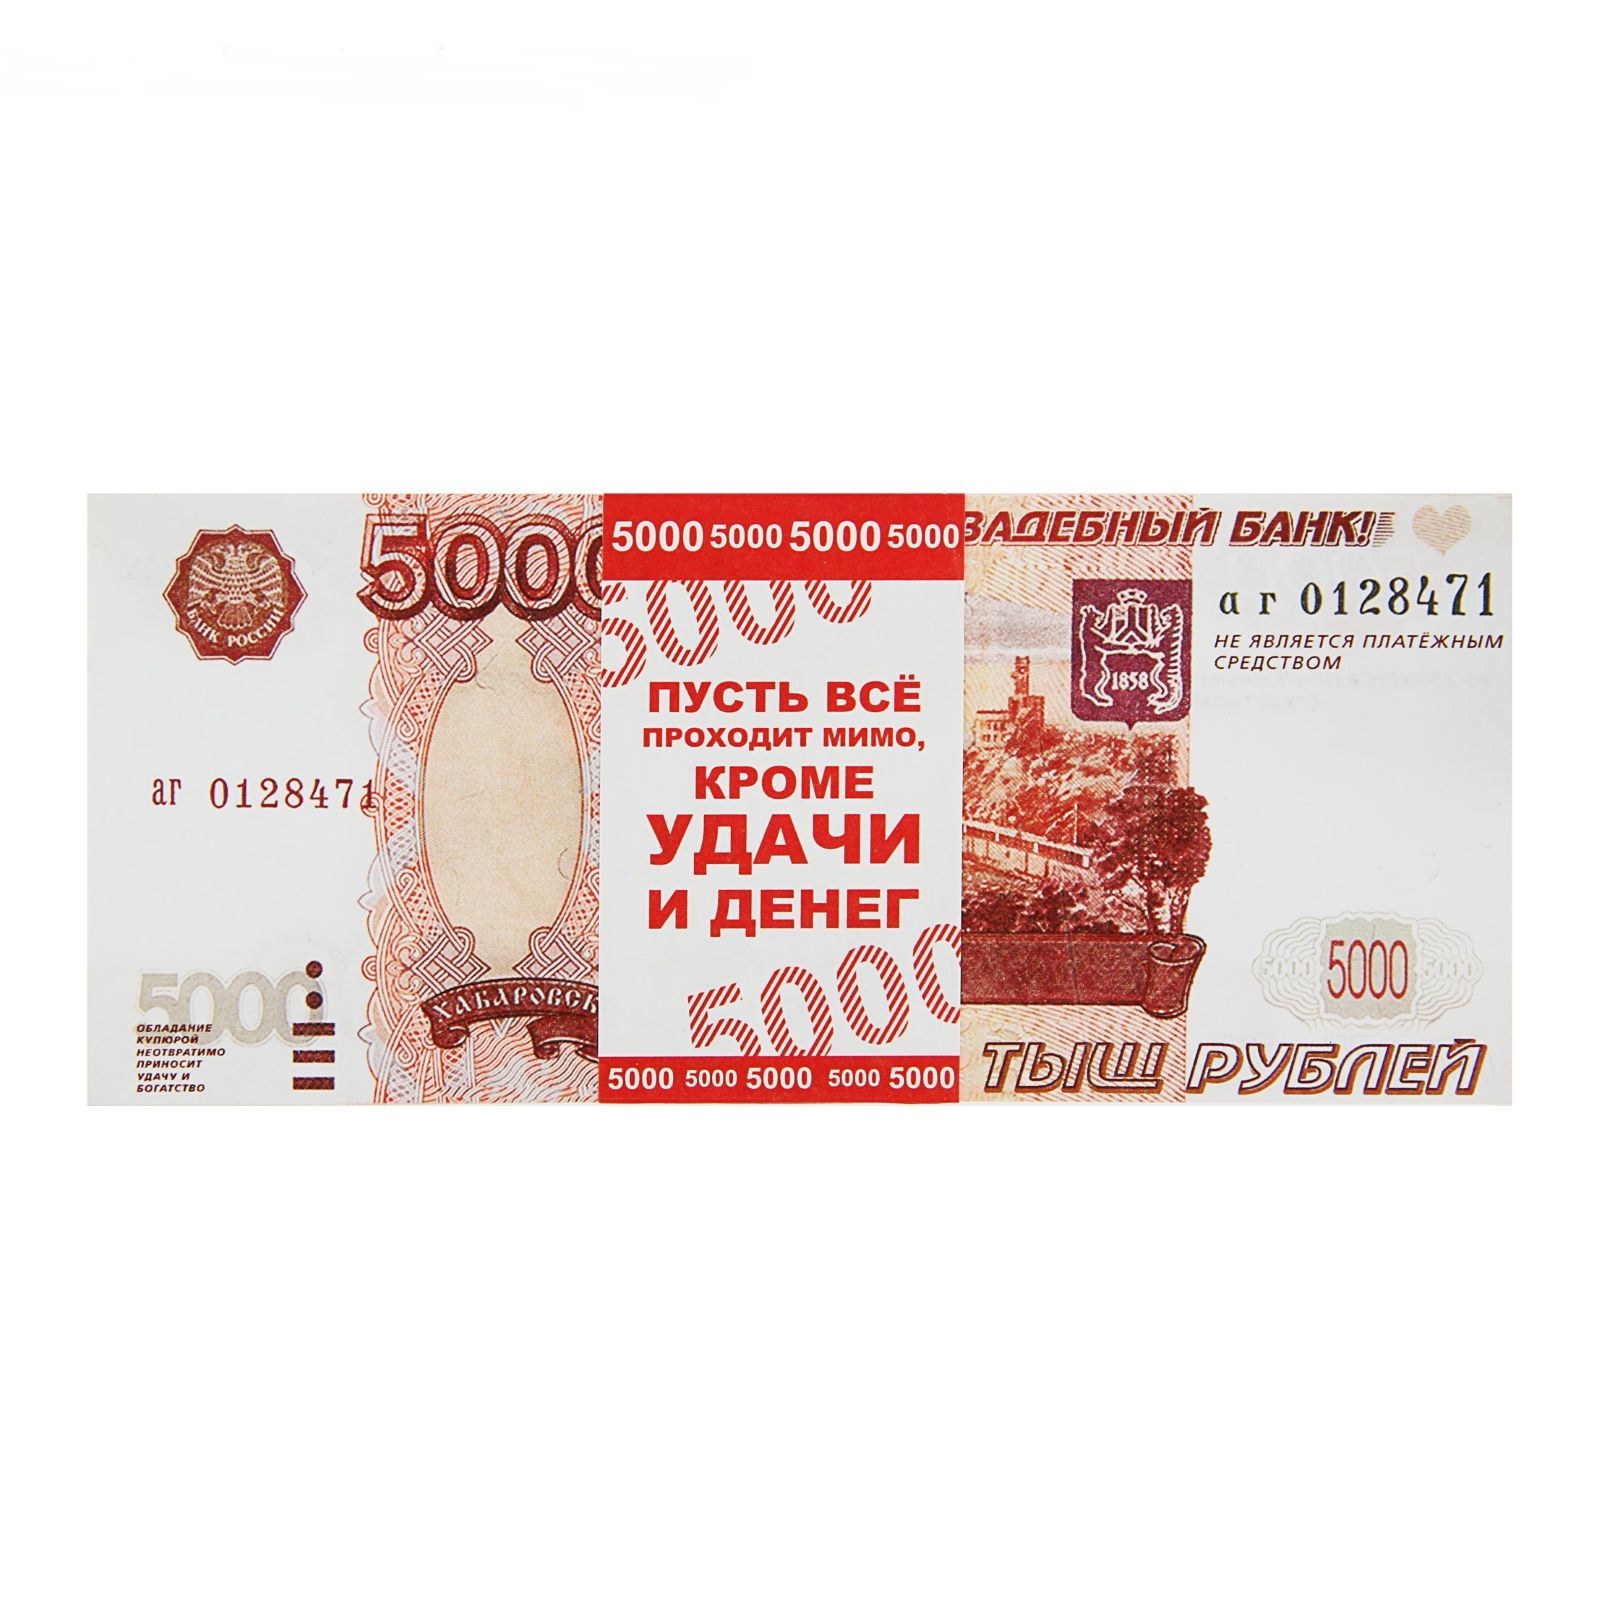 Пачка купюр для выкупа 1417818 Номинал 5000 набор 80шт - Ульяновск 